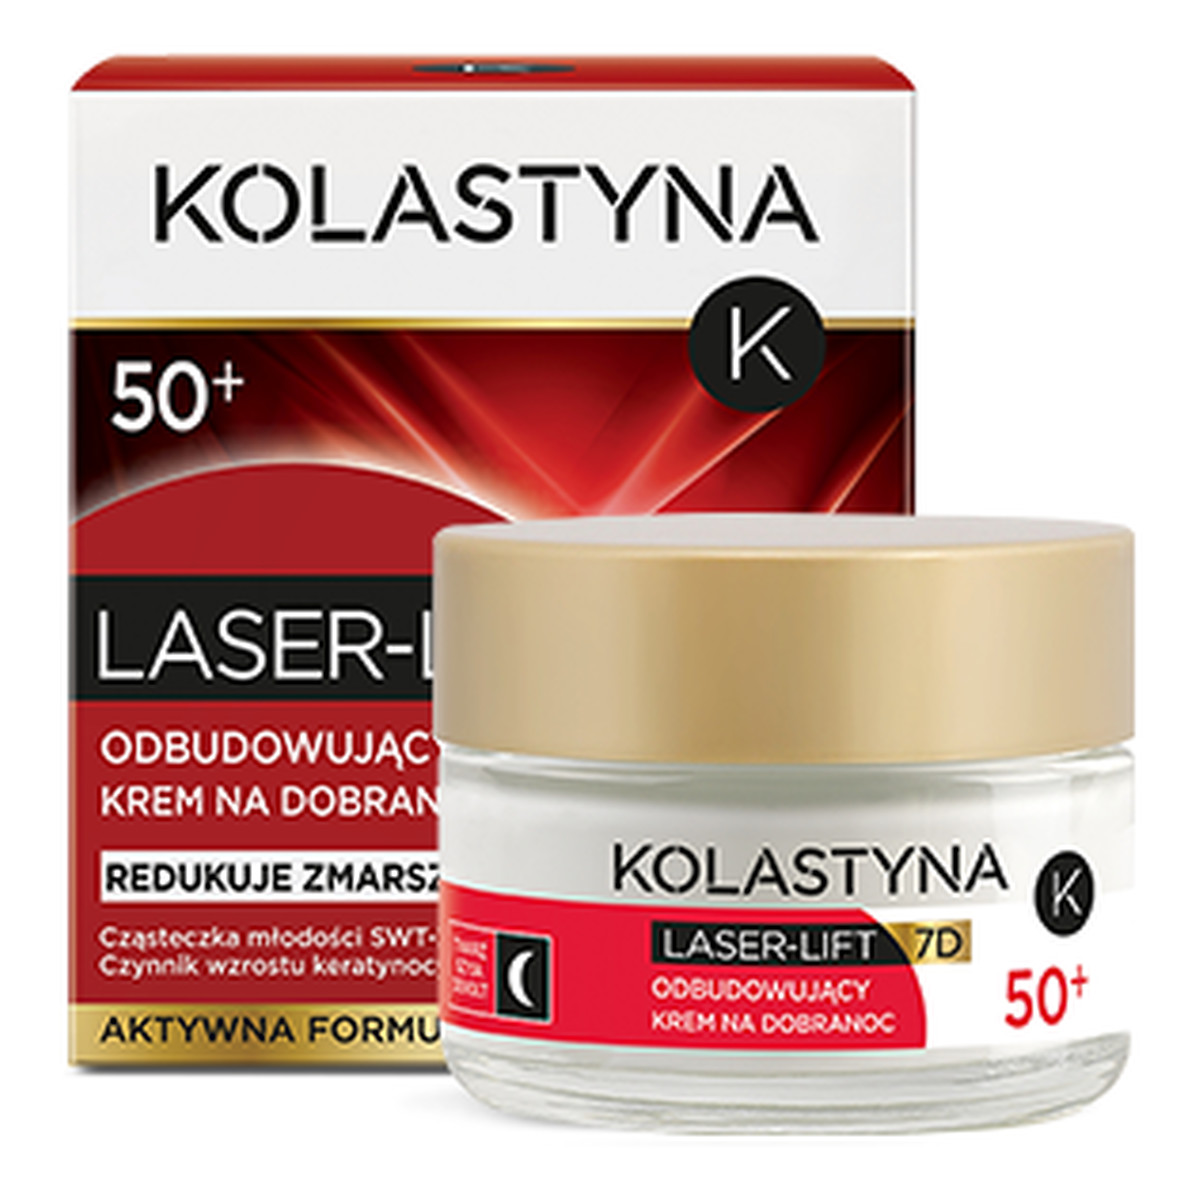 Kolastyna Laser - Lift 7D 50+ Odbudowujący Krem Na Dobranoc 50ml